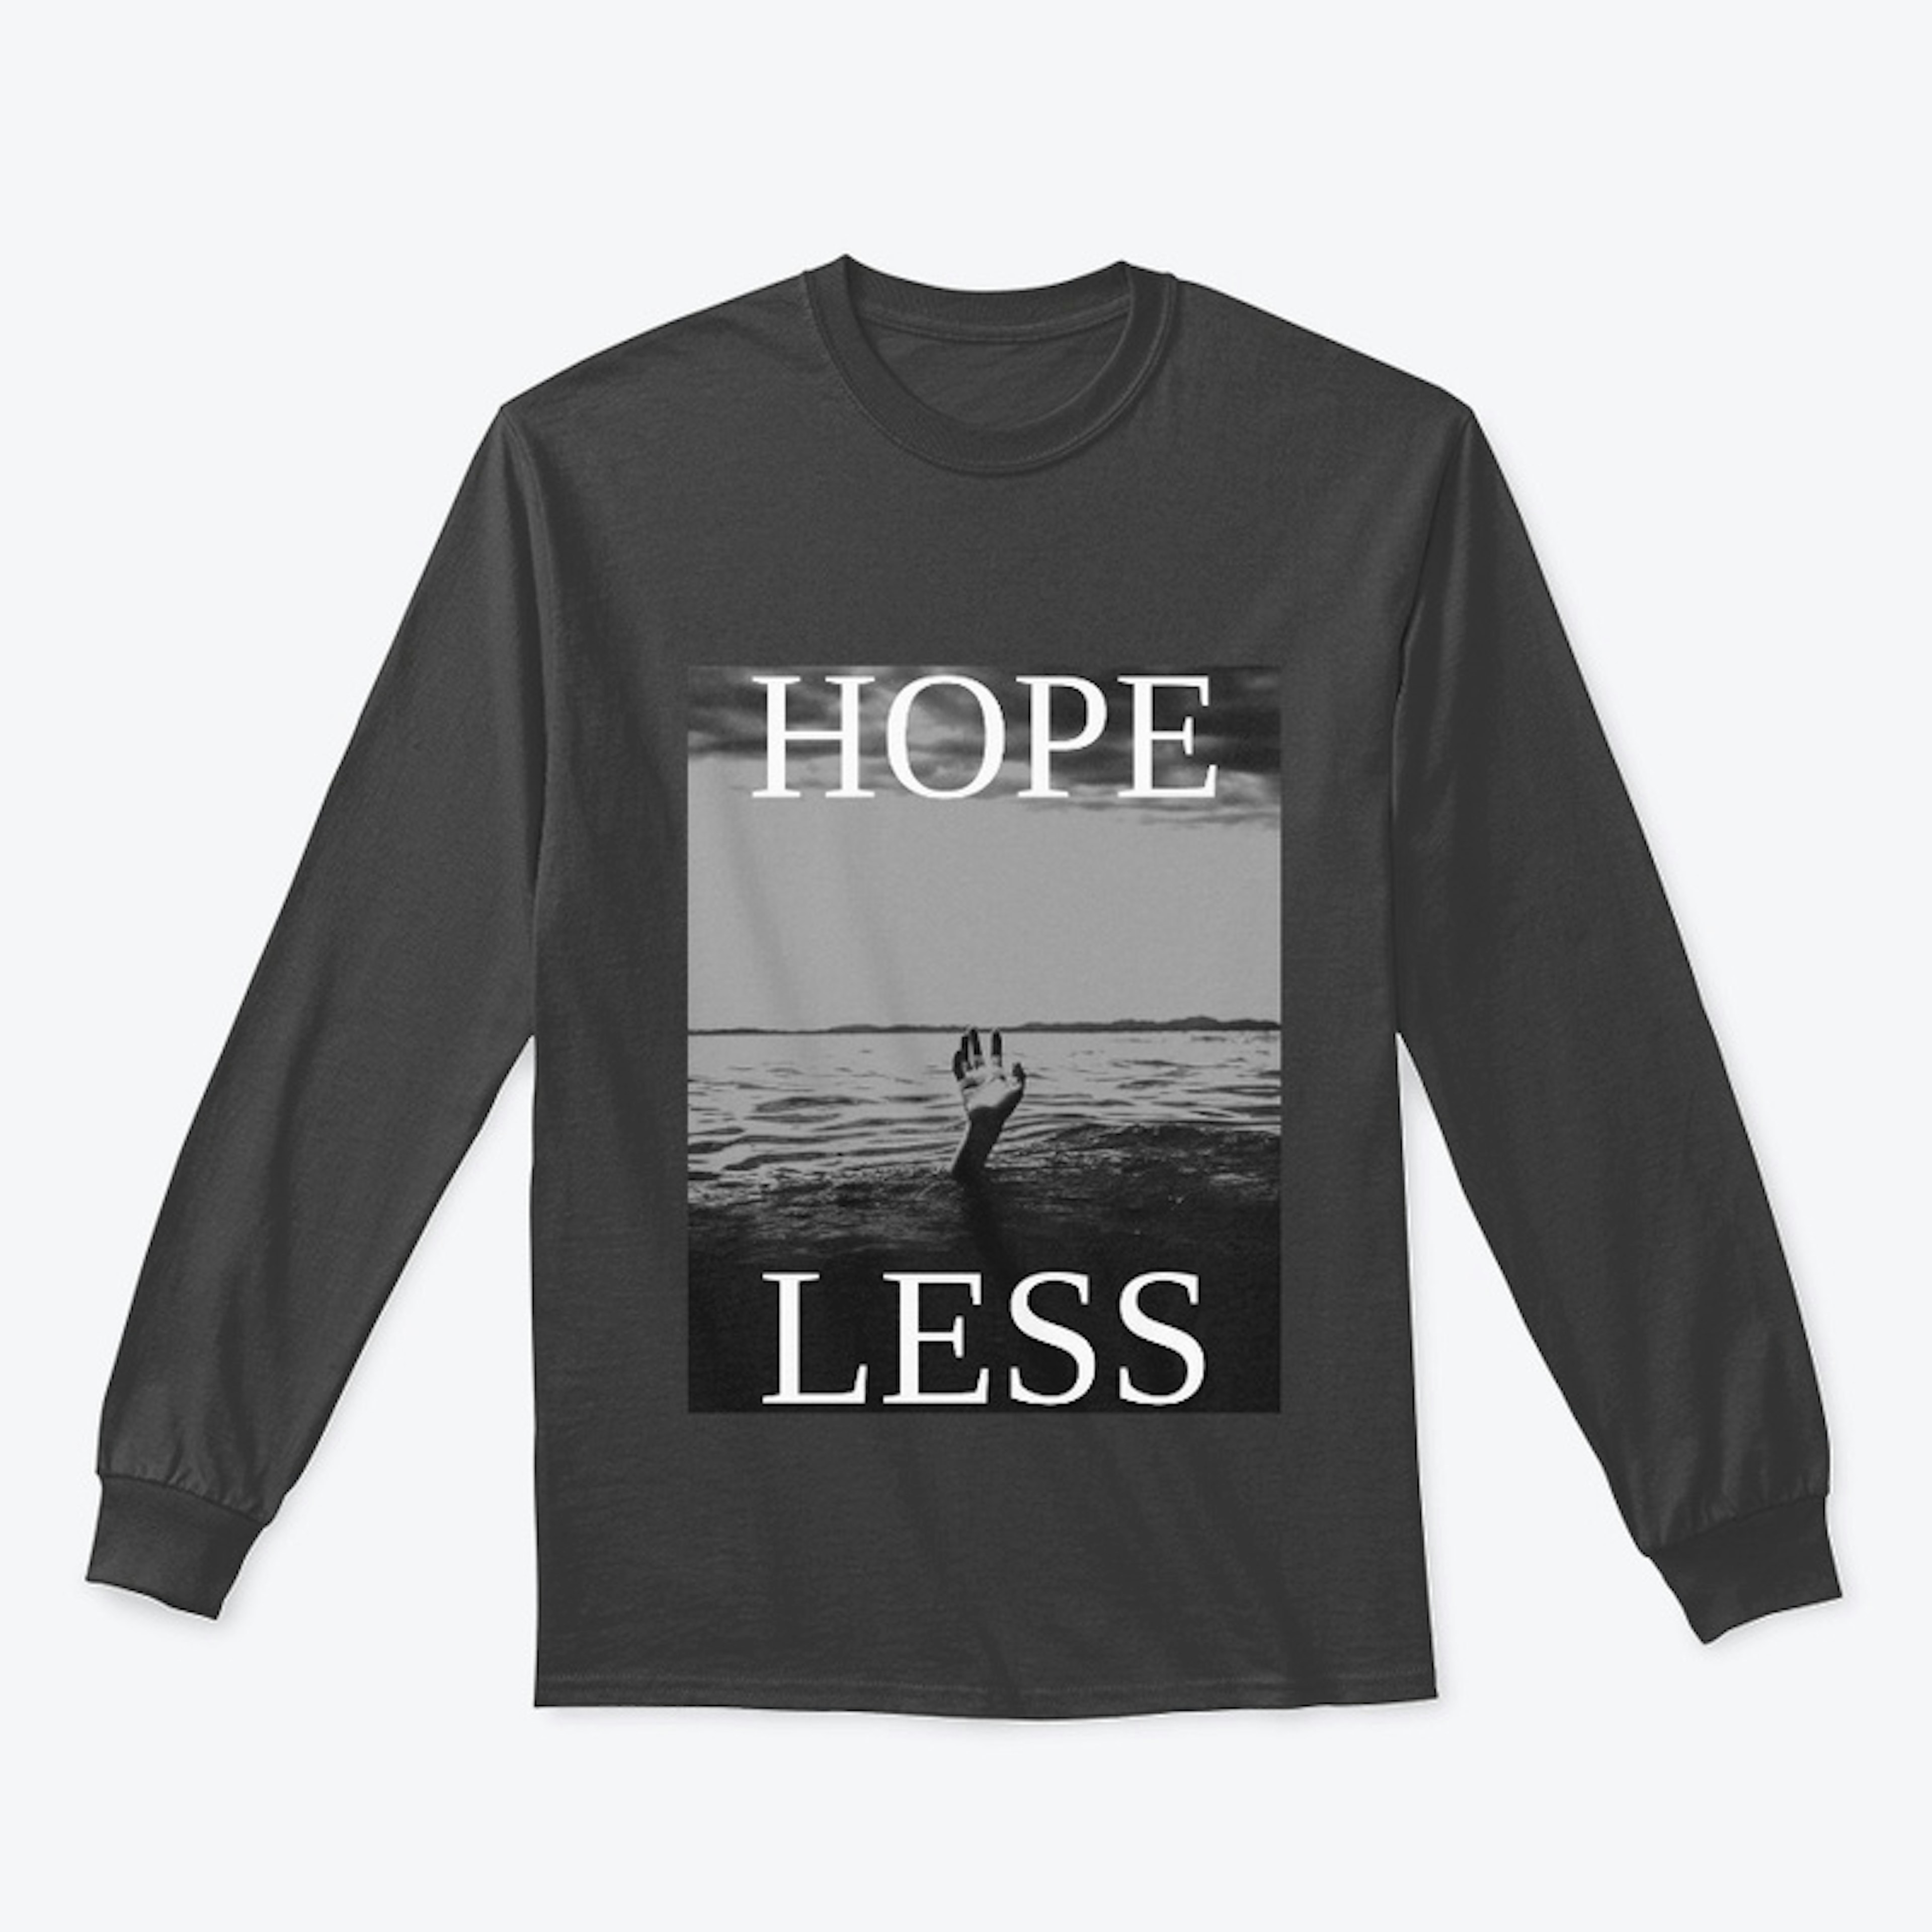 Hope Less (Hopeless)